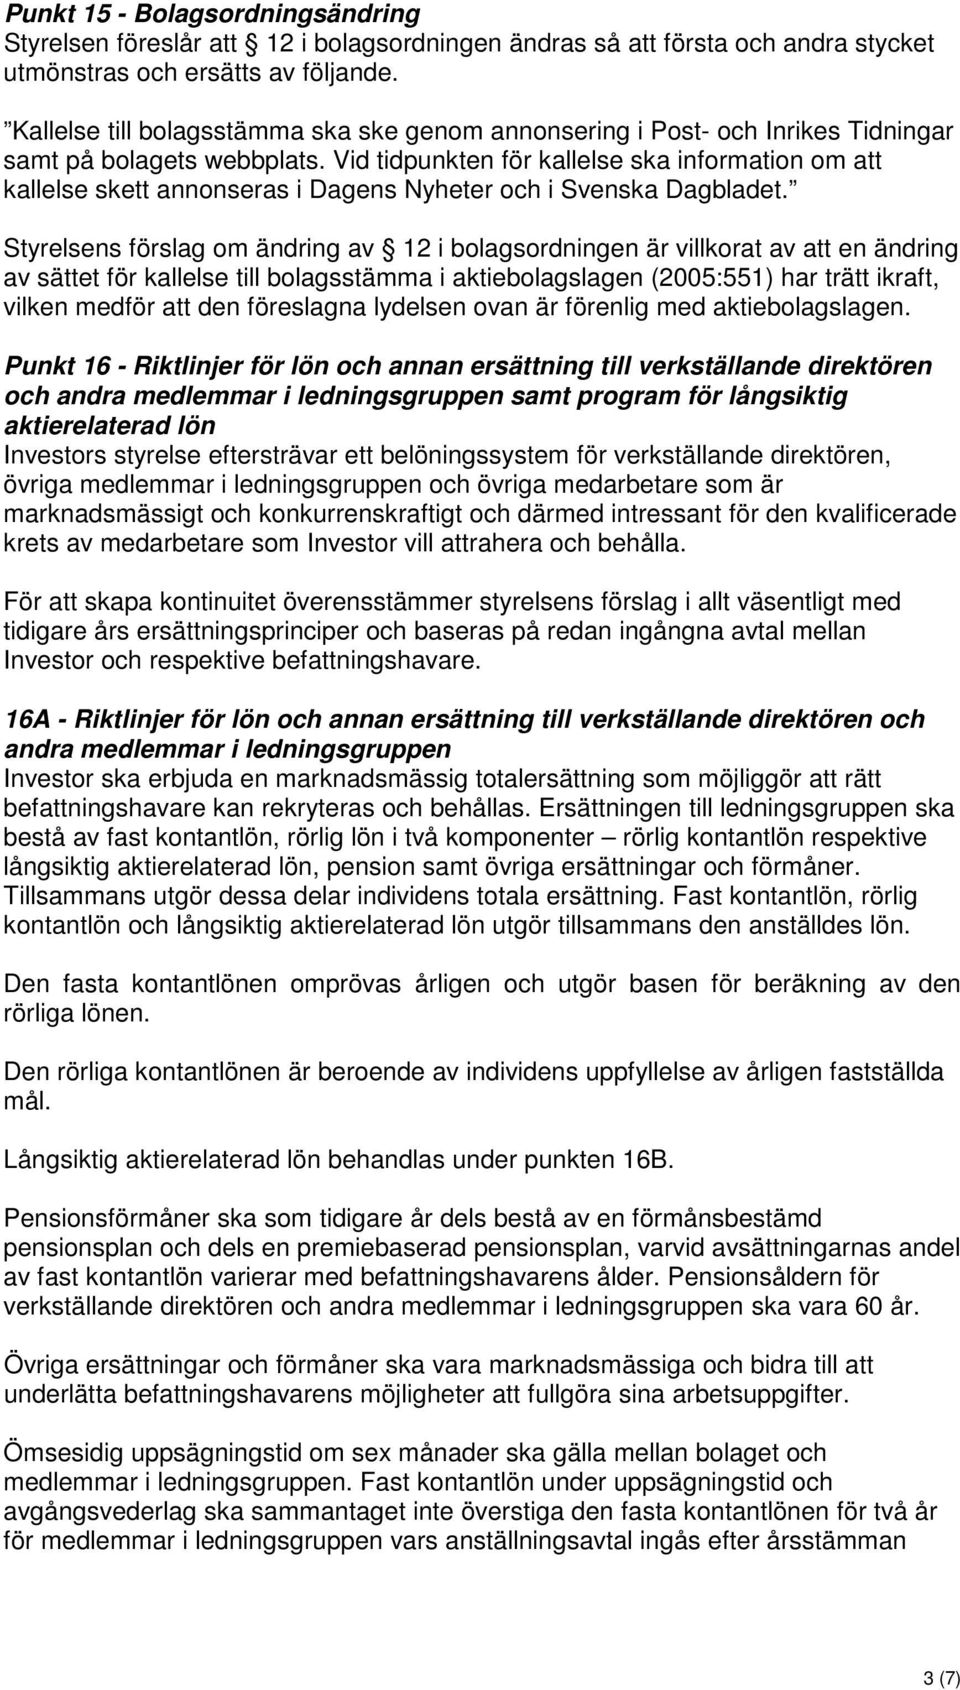 Vid tidpunkten för kallelse ska information om att kallelse skett annonseras i Dagens Nyheter och i Svenska Dagbladet.